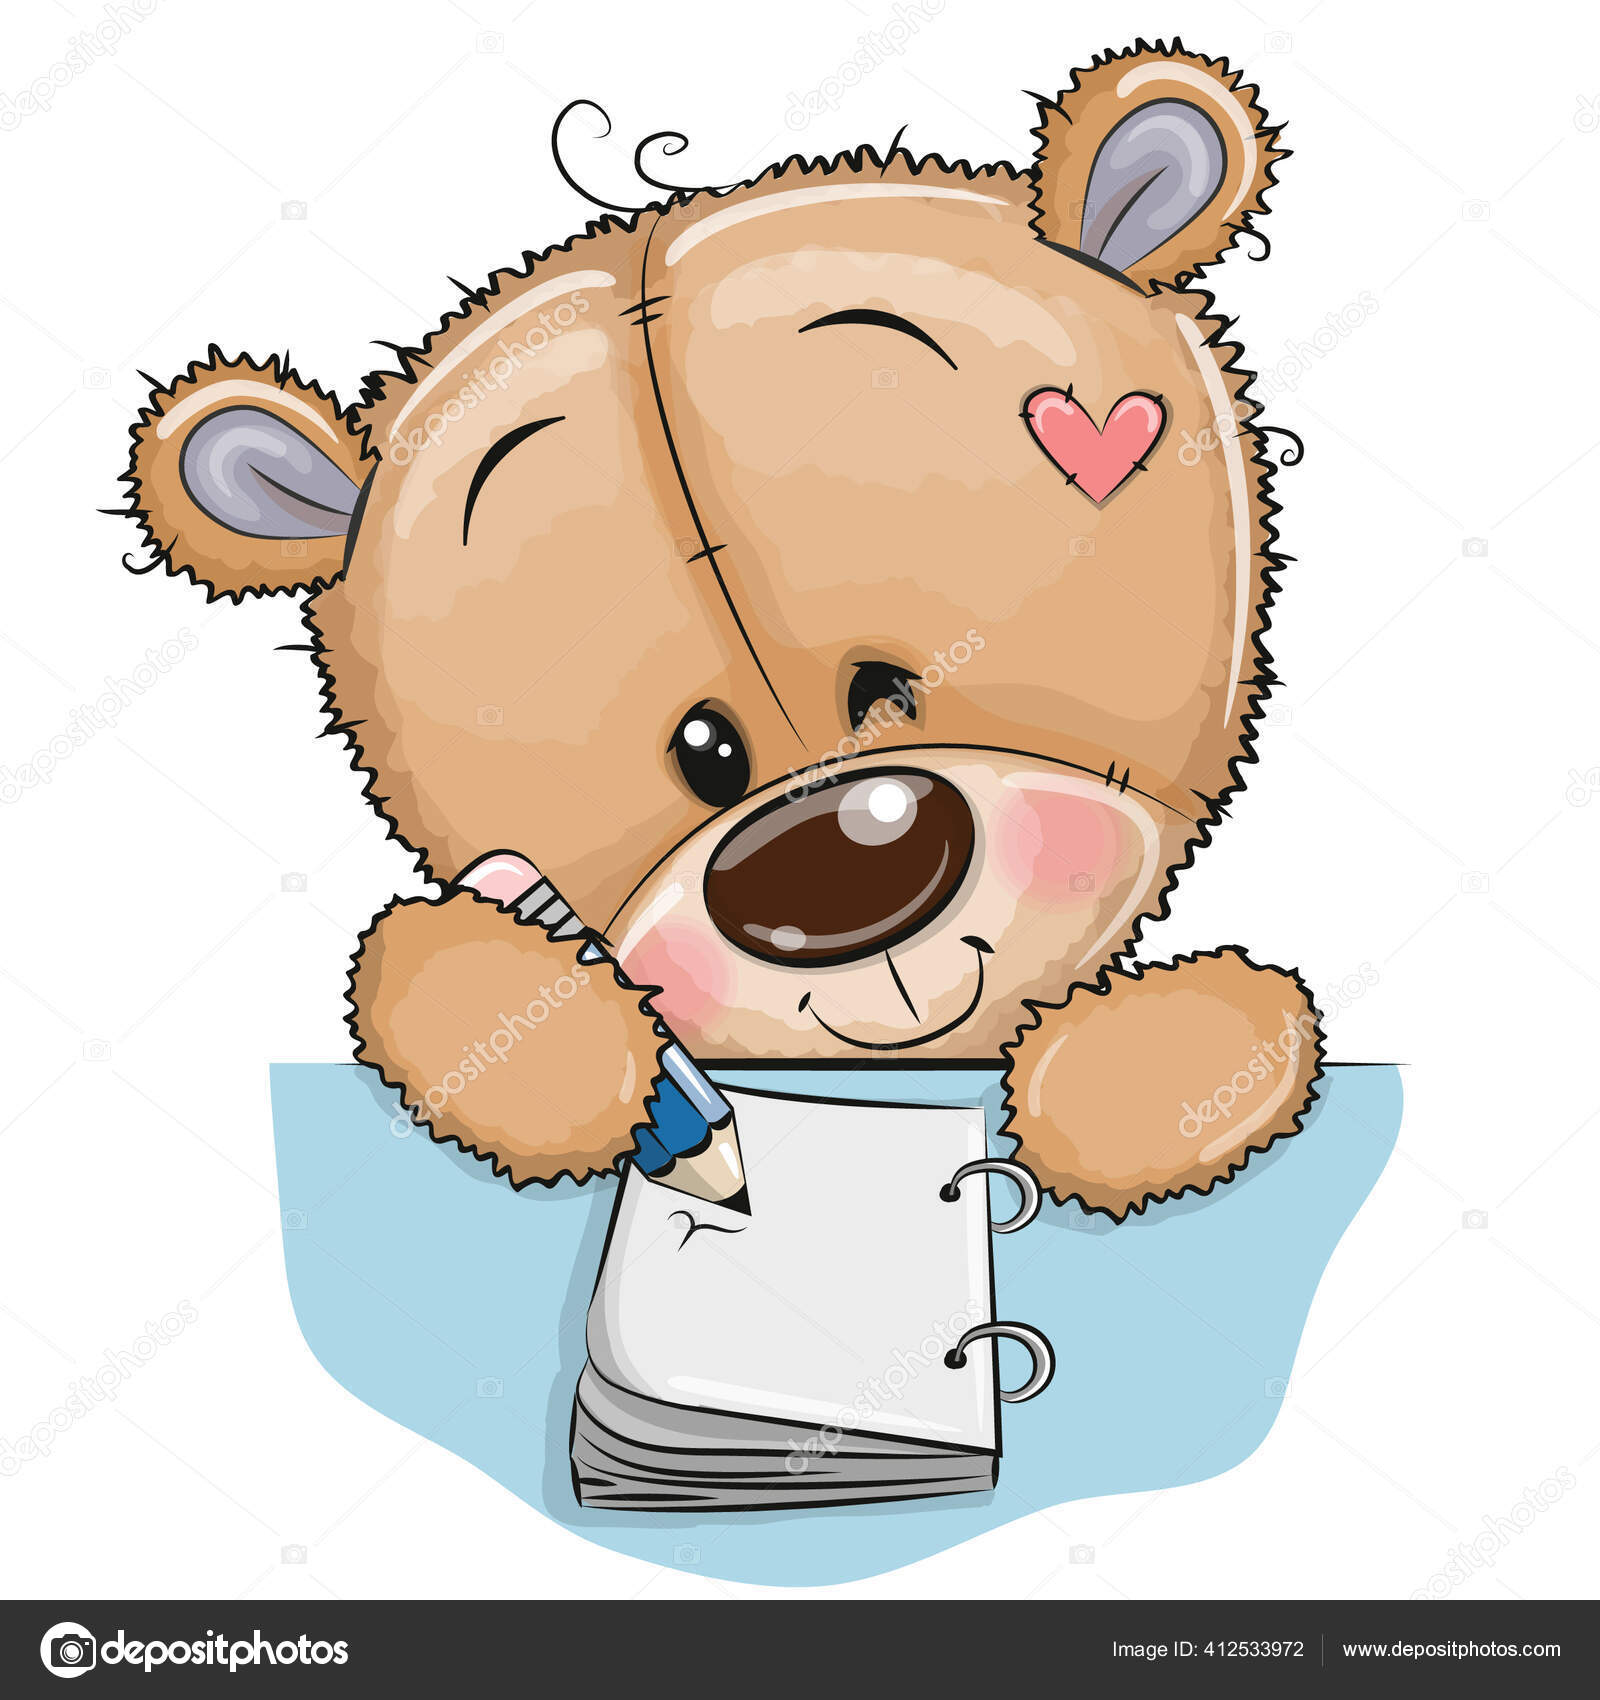 Chú gấu Teddy hoạt hình - Ai cũng biết đến chú gấu Teddy - biểu tượng của tình yêu và sự dễ thương. Hãy cùng theo dõi cuộc phiêu lưu ngộ nghĩnh của chú gấu này trong hình dạng hoạt hình. Bức tranh sẽ mang đến cho bạn những phút giây thư giãn và ngọt ngào nhất.